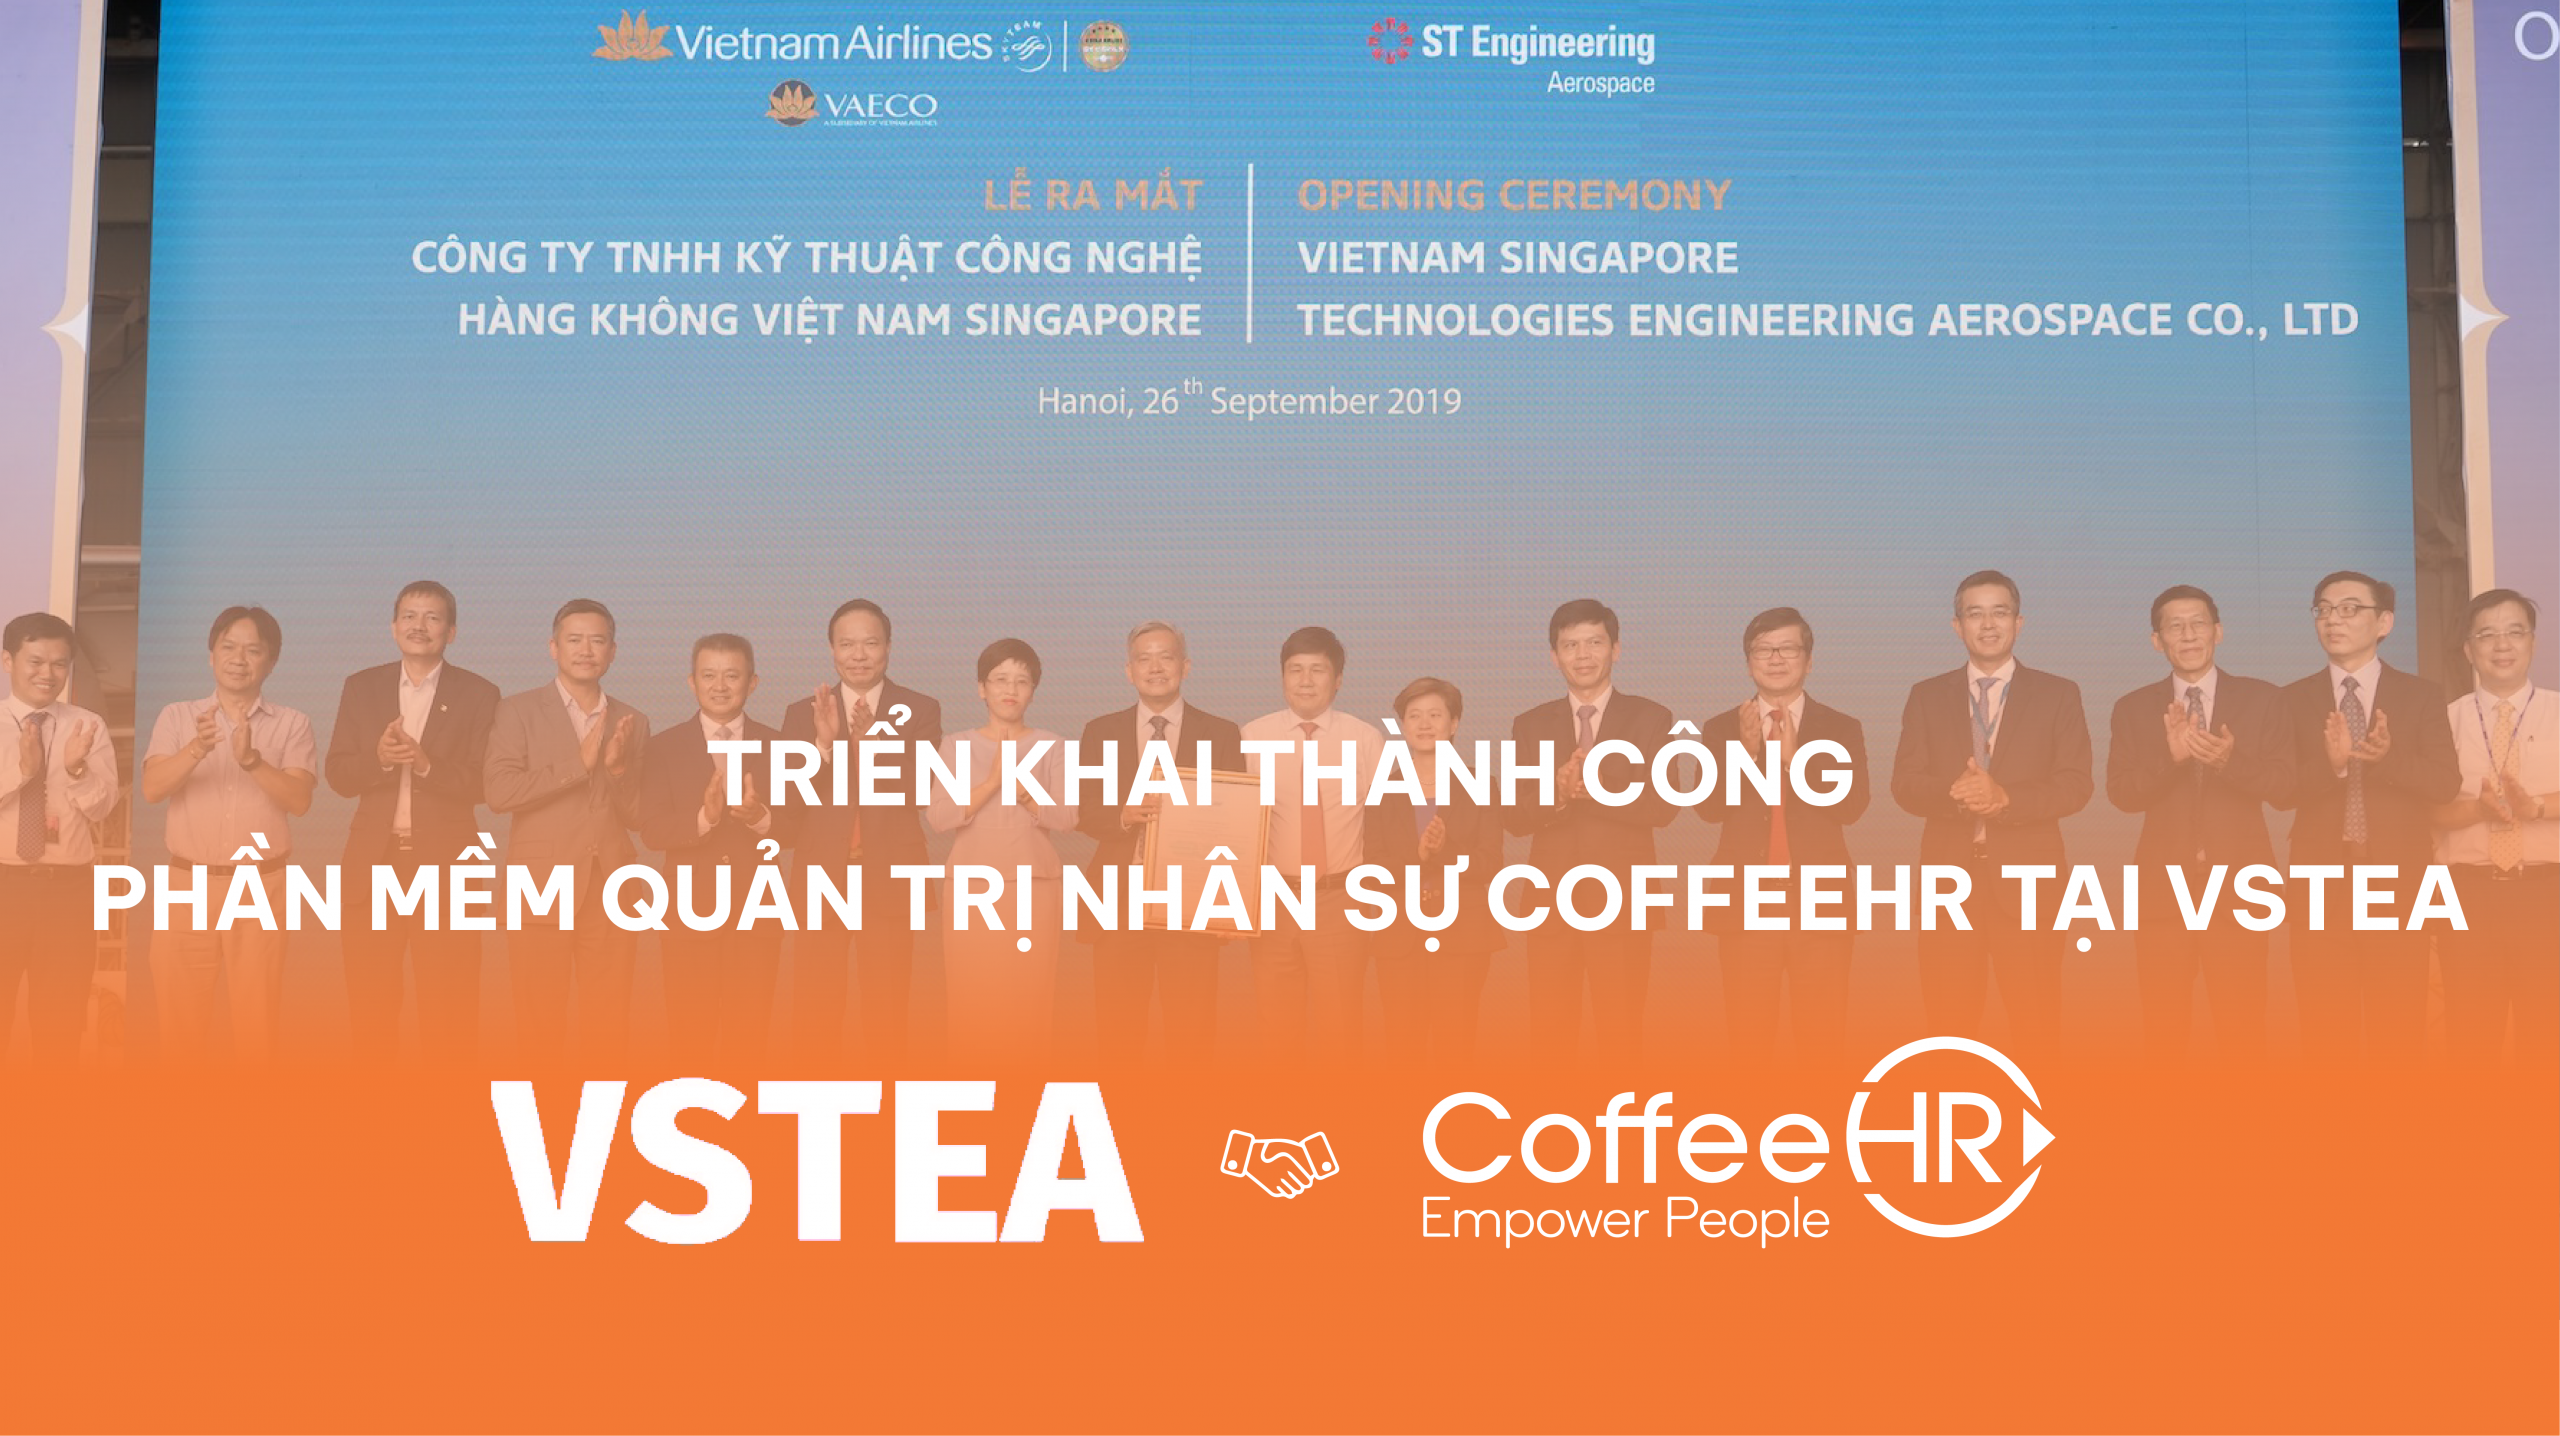 Triển khai thành công dự án quản trị nhân sự CoffeeHR tại VSTEA